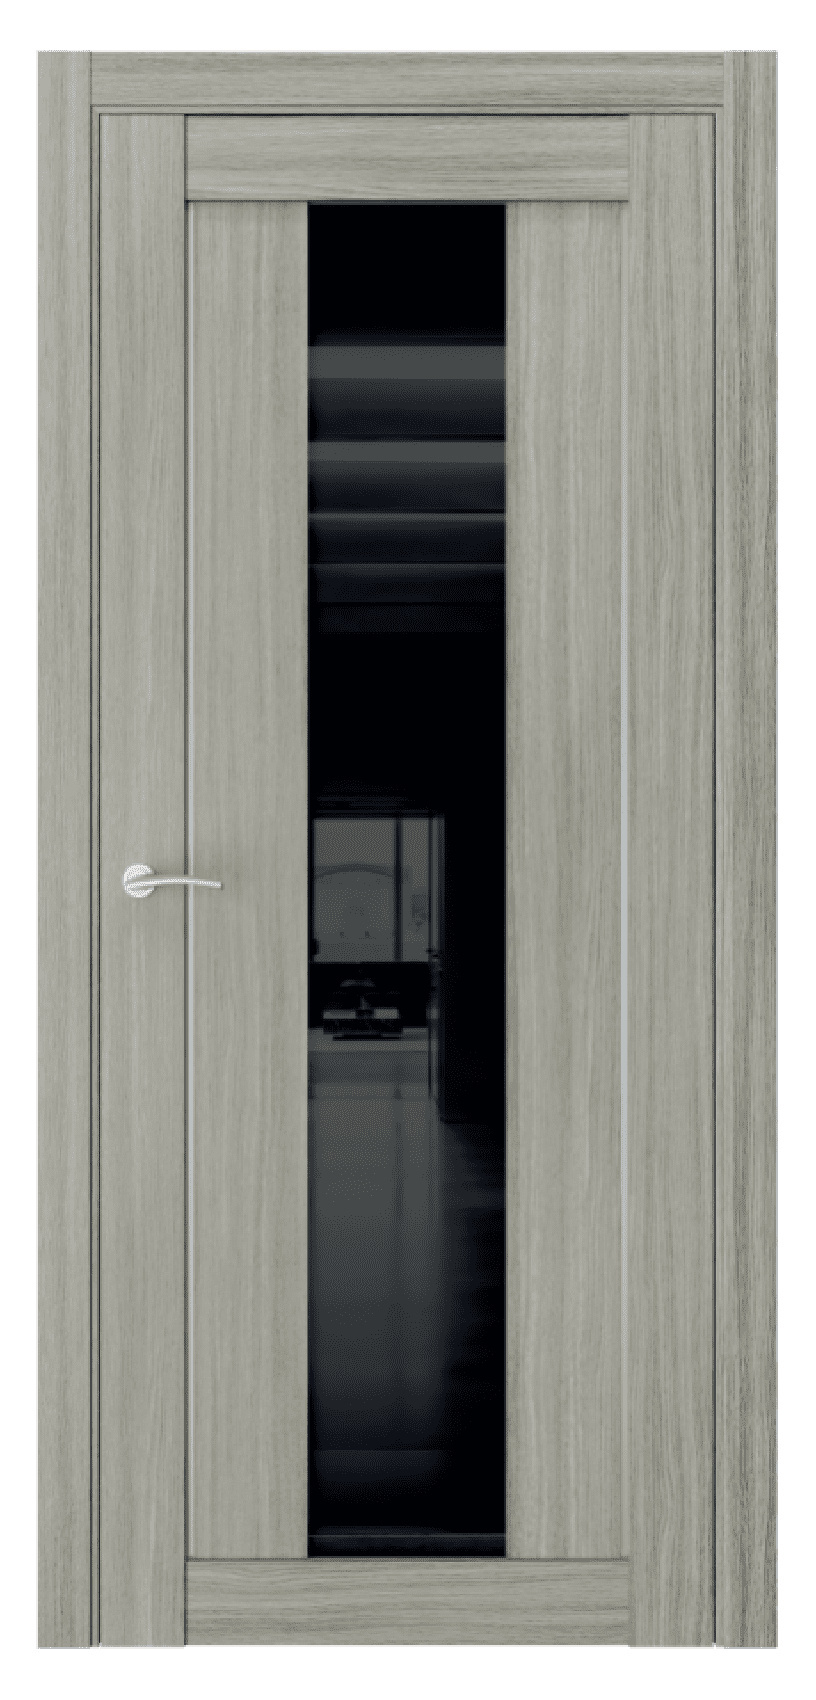 Questdoors Межкомнатная дверь Q10, арт. 17462 - фото №1